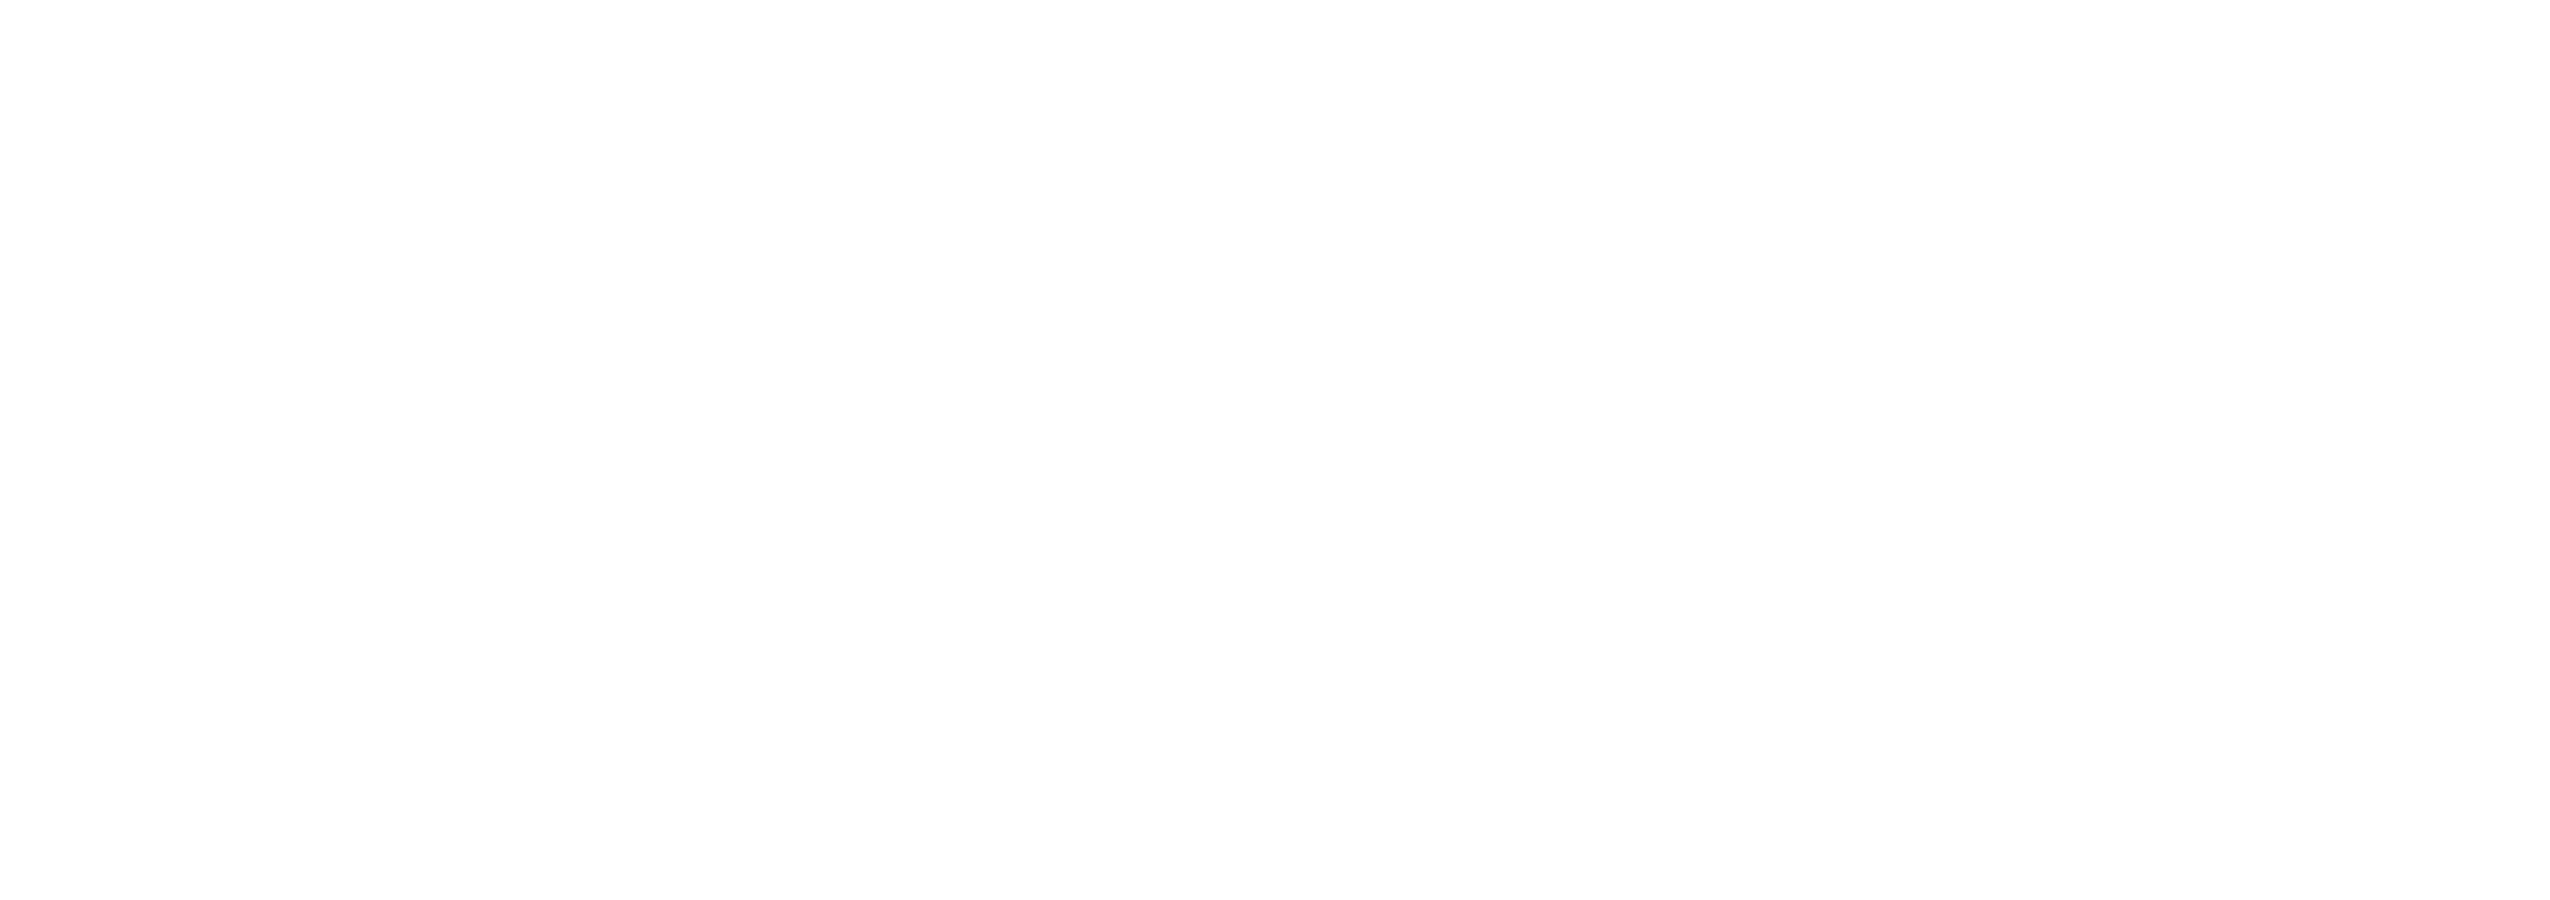 White B2B-CFO-Logo-Strategic Business Advisors Horizontal 2021